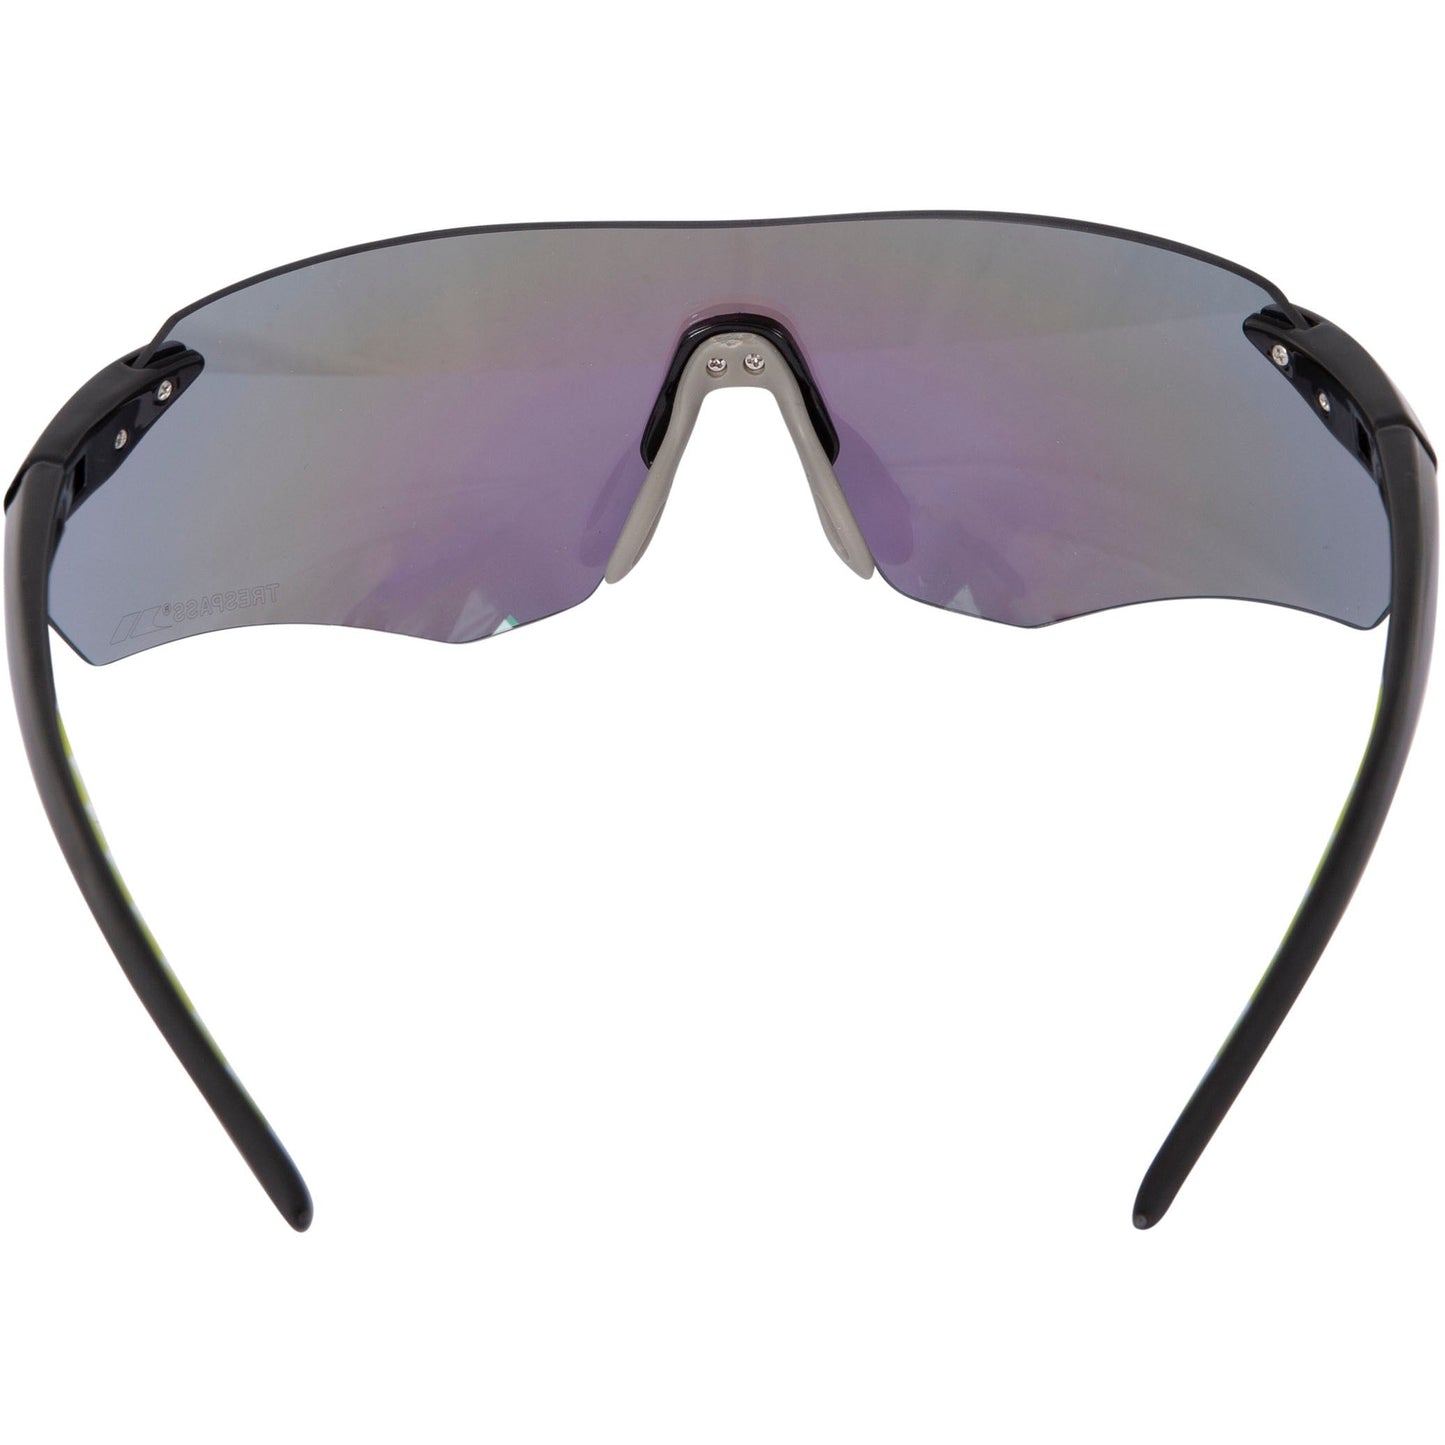 Coro Polycarbonate Sunglasses in Black